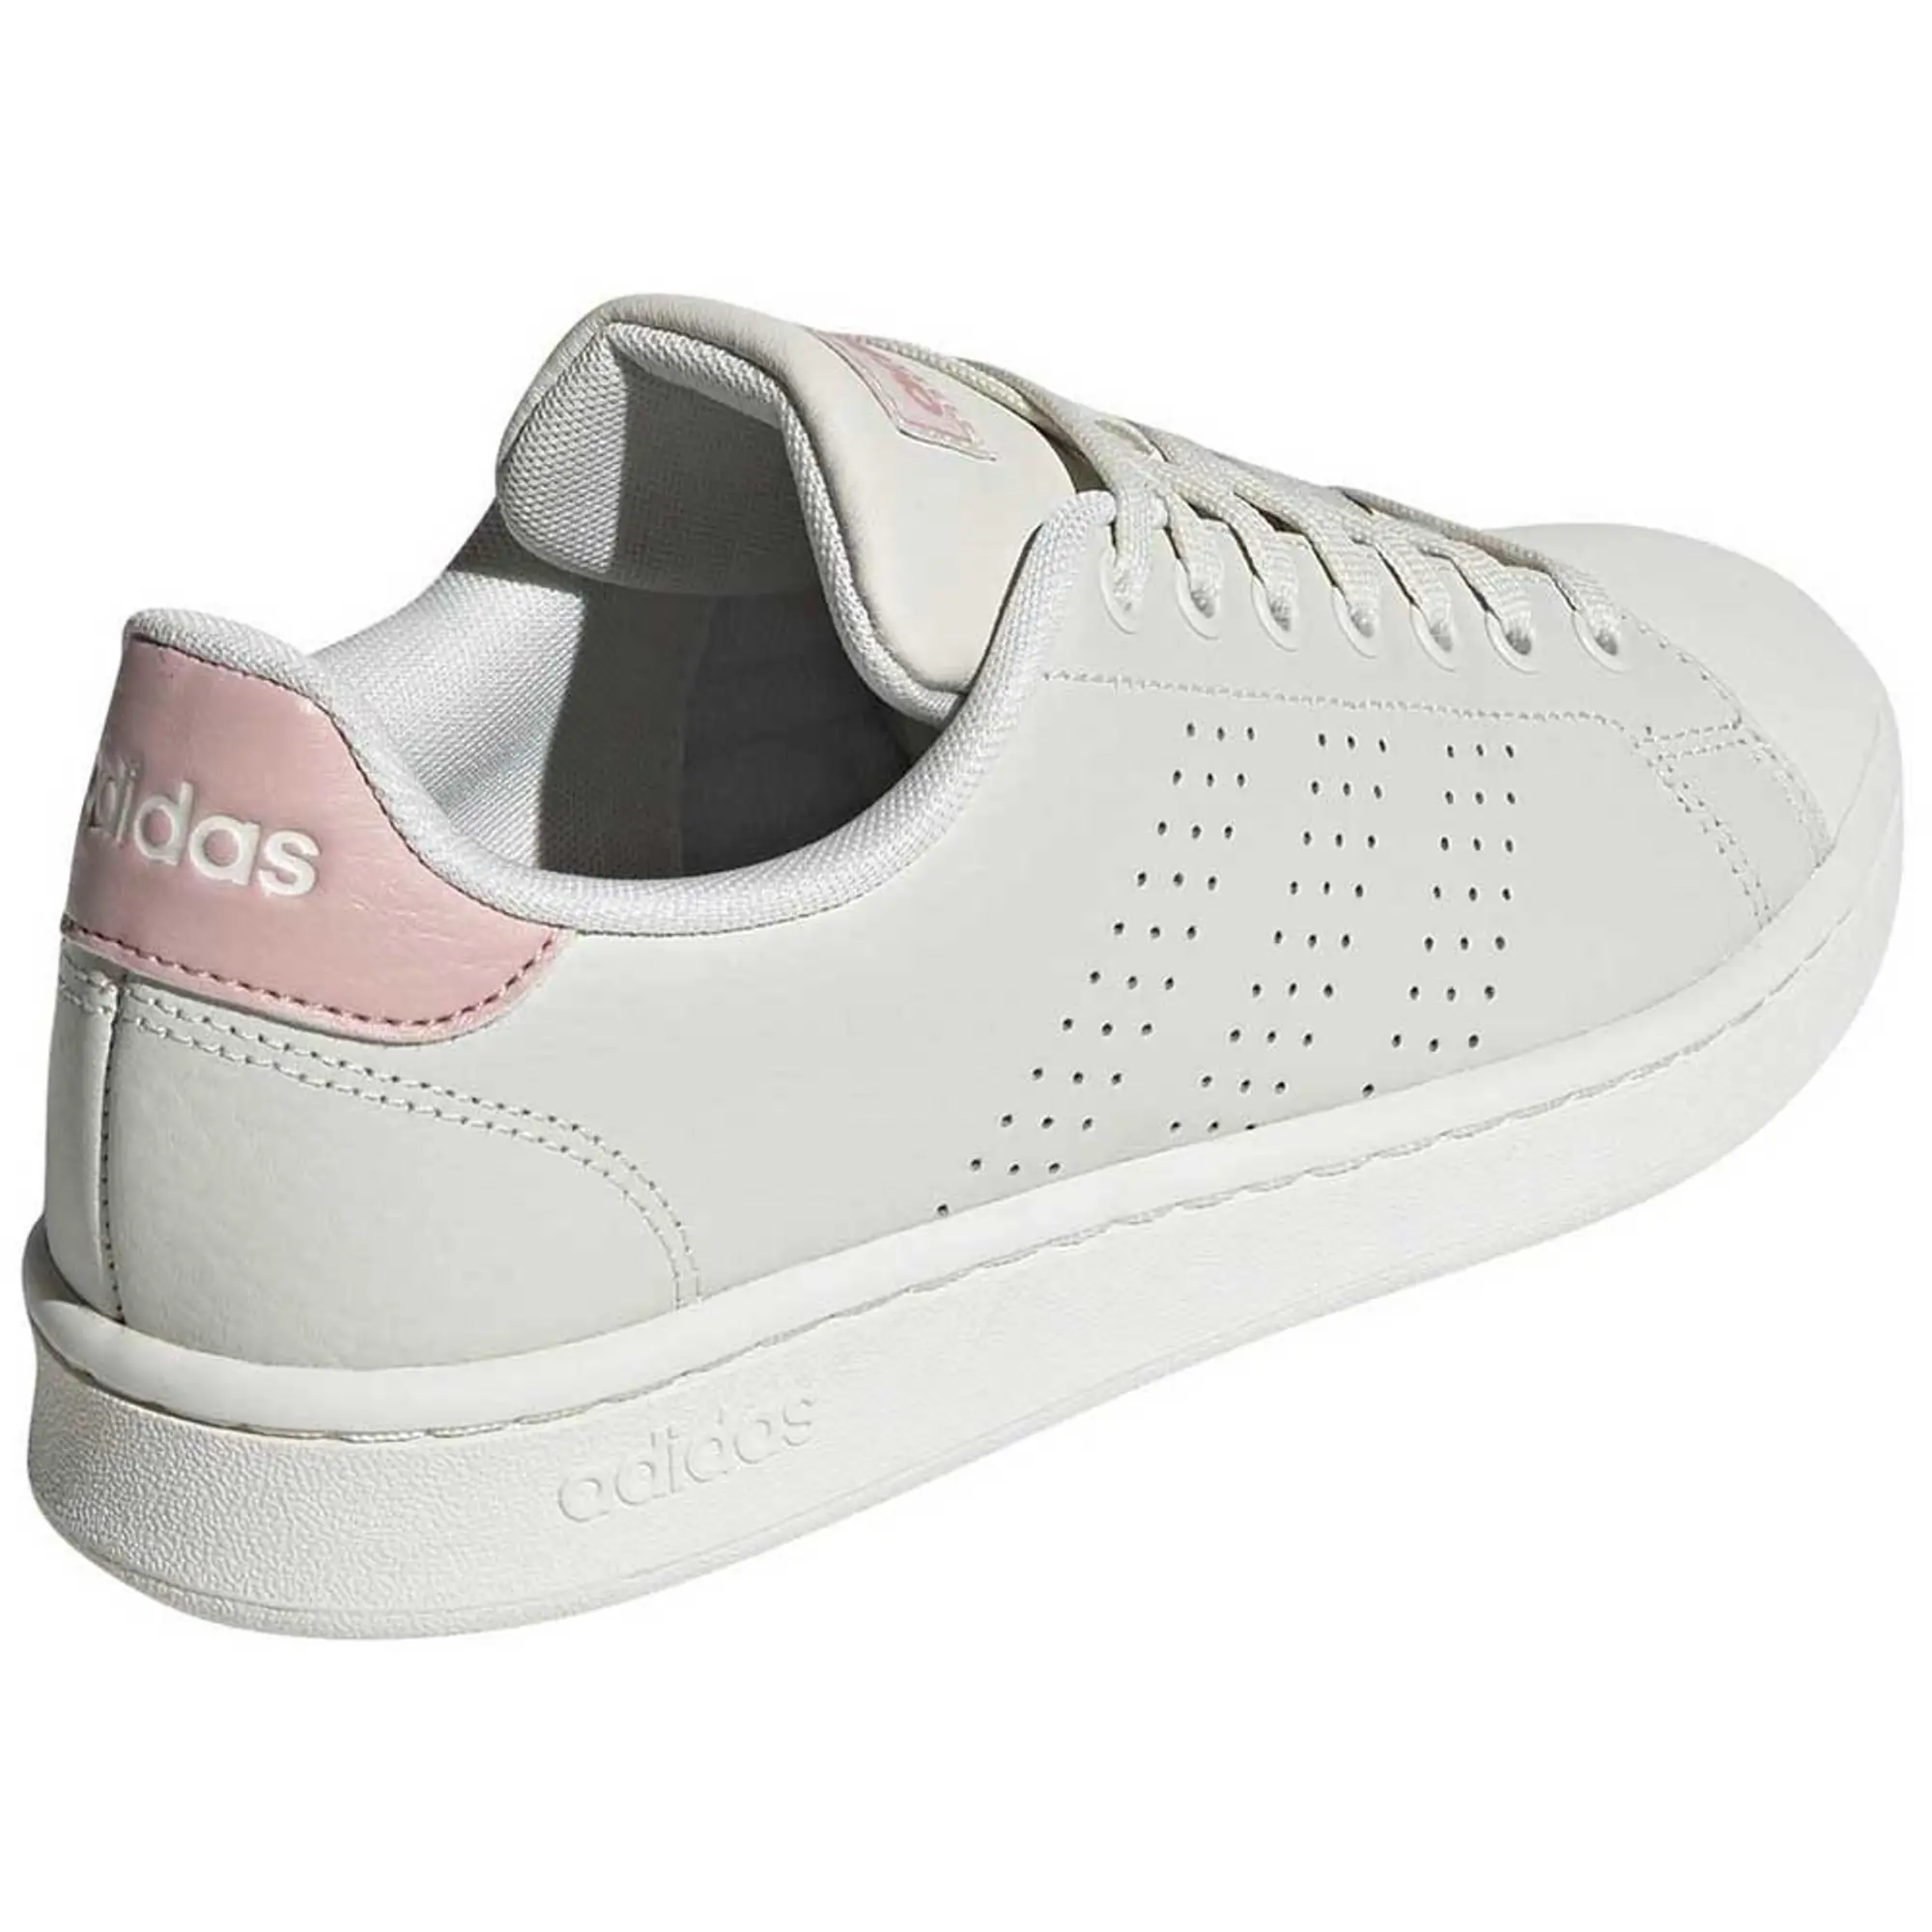 Adidas Sportswear Advantage Shoes  - Grey